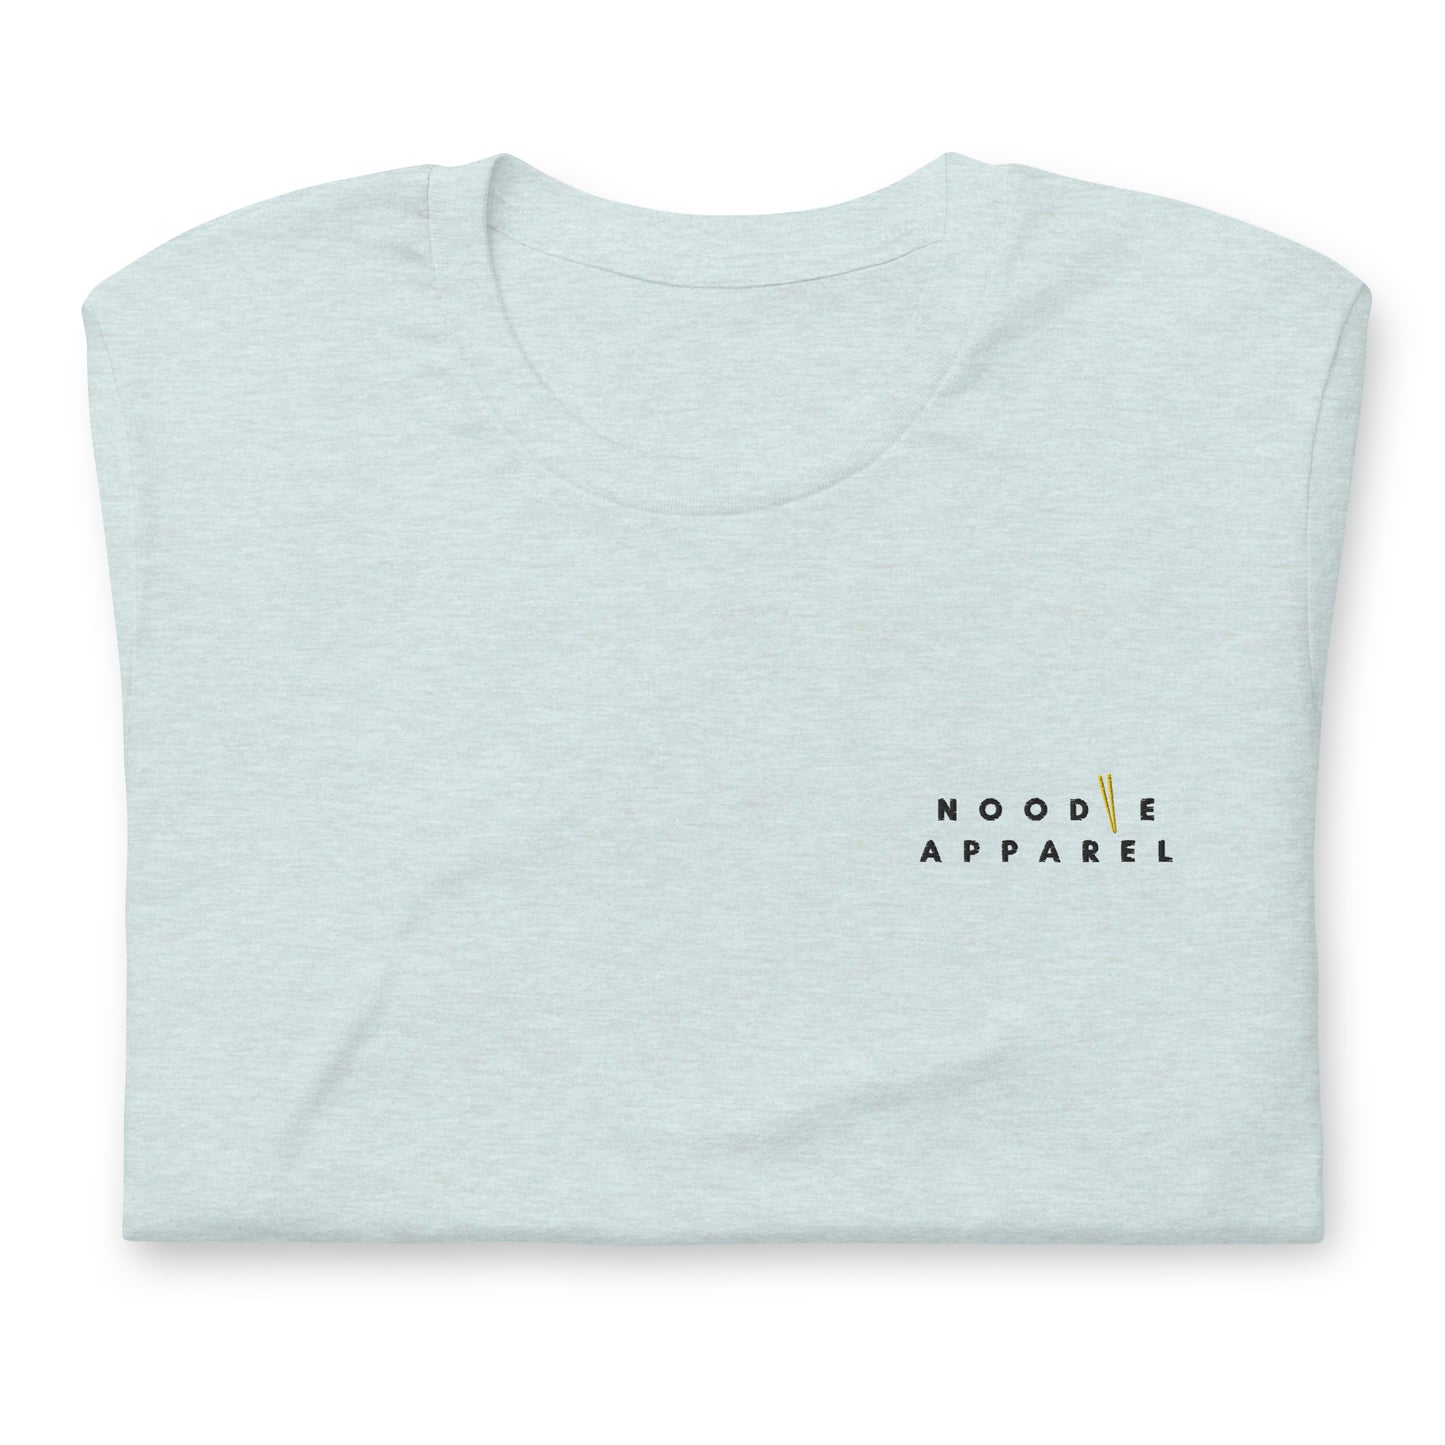 Noodle Empire T-Shirt: Official Logo